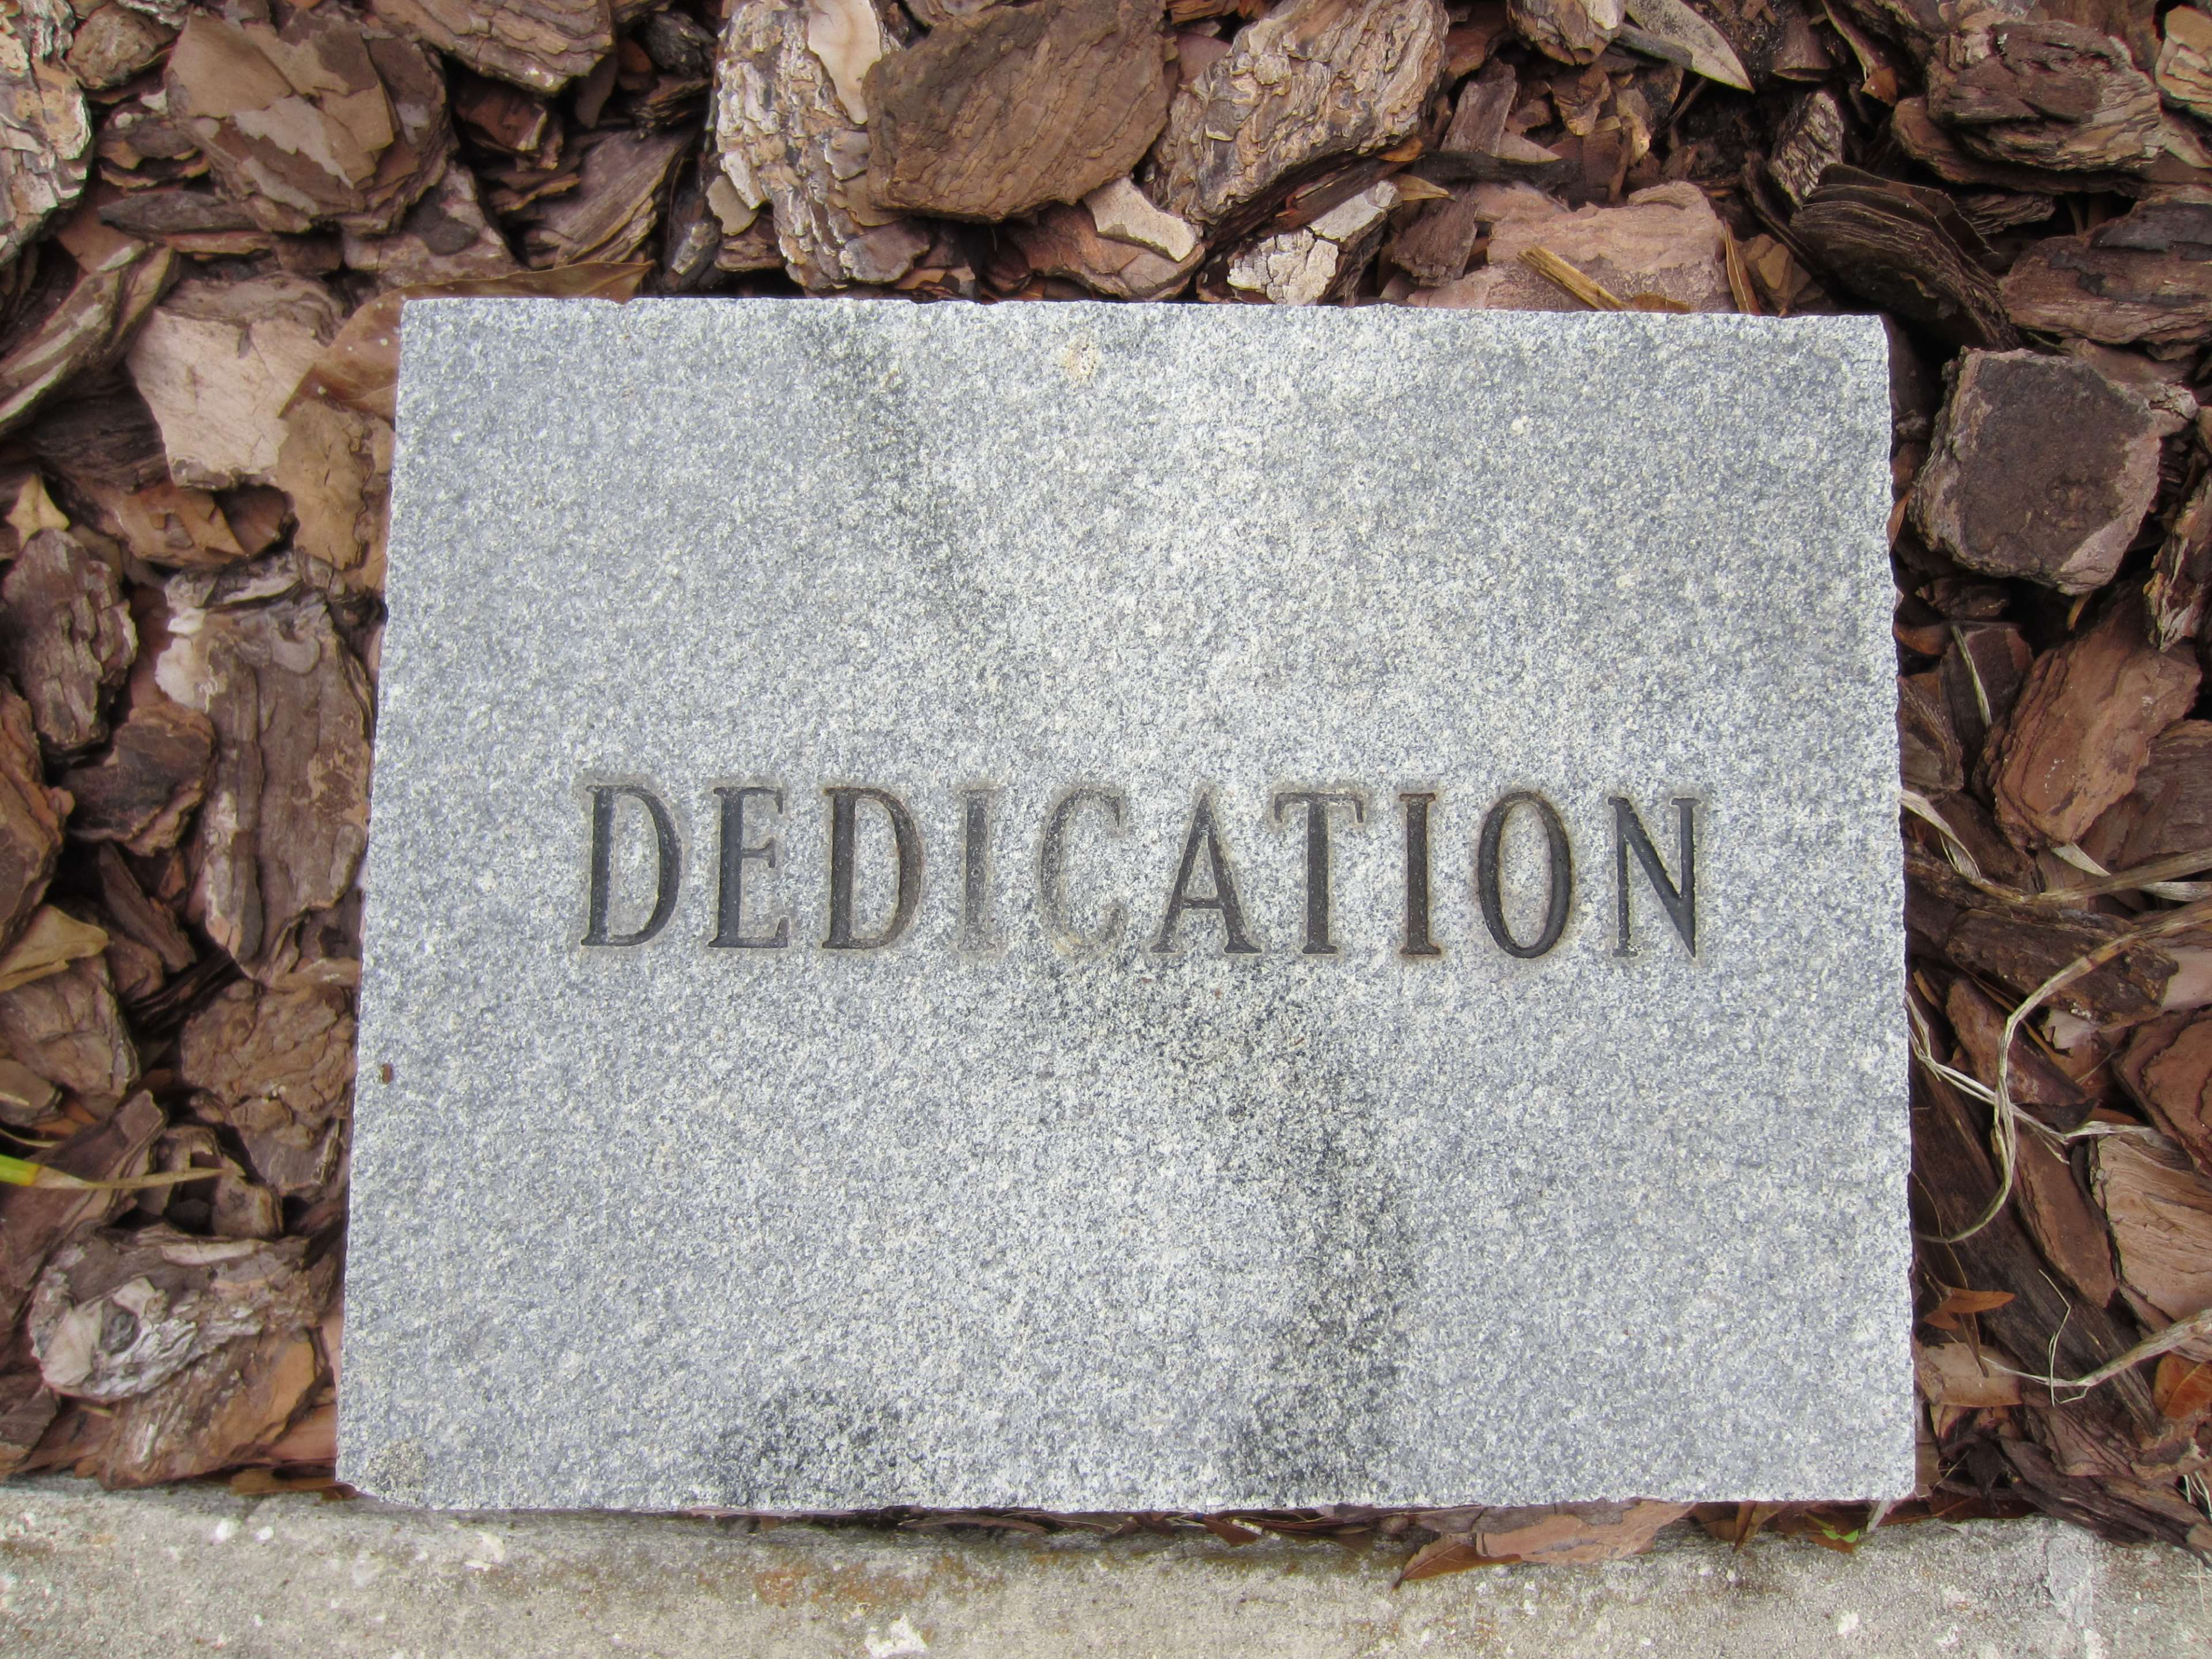 Dedication, Gray, Griggio, Incisione, Inscription, - Concrete , HD Wallpaper & Backgrounds